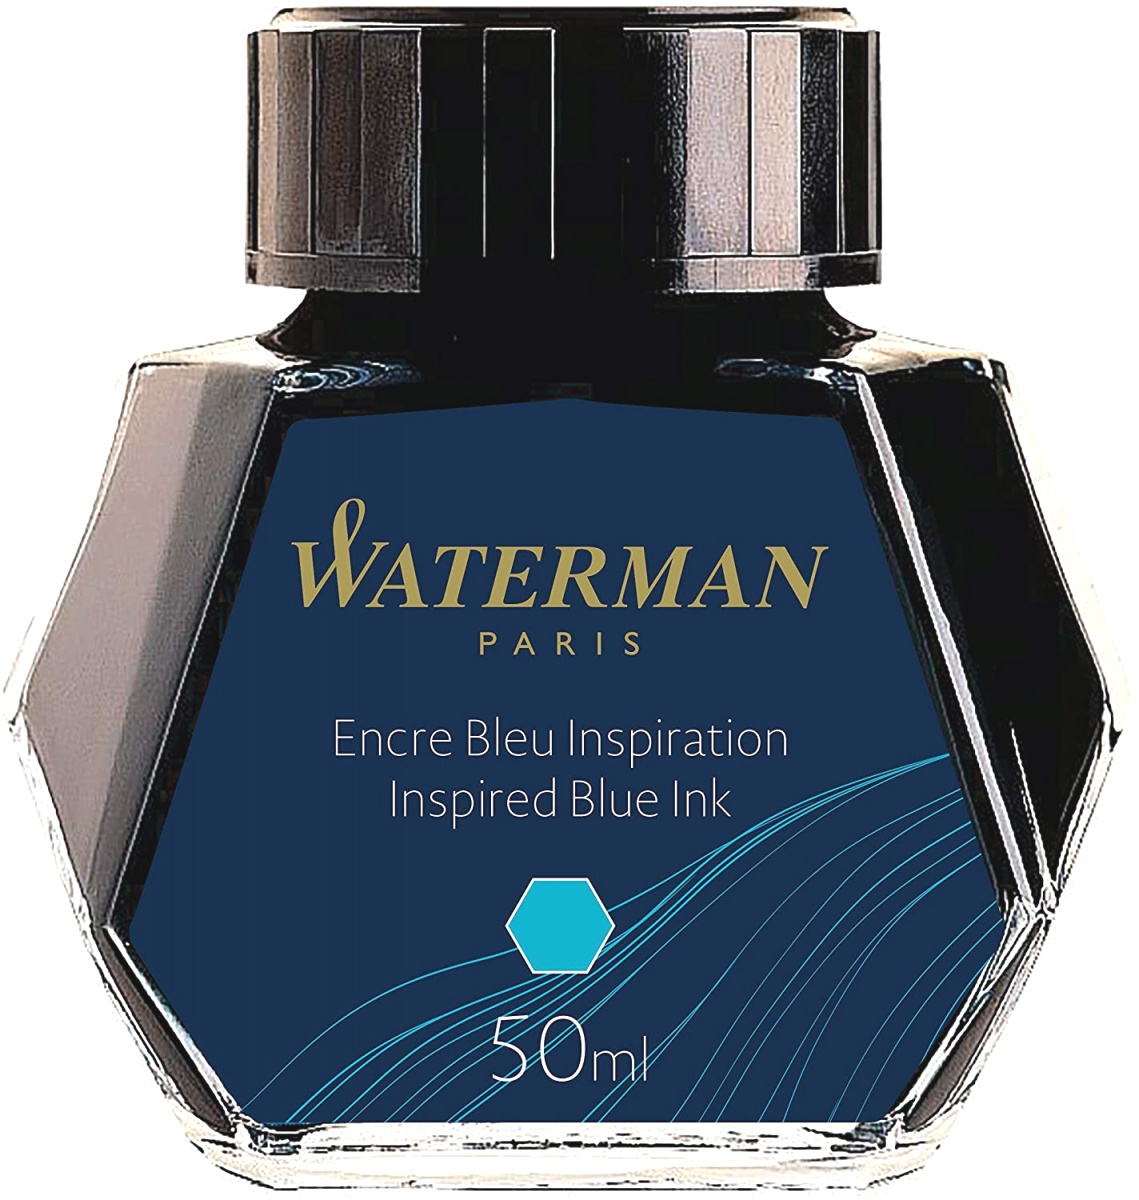  Флакон с голубыми чернилами для перьевых ручек Waterman, Inspired Blue